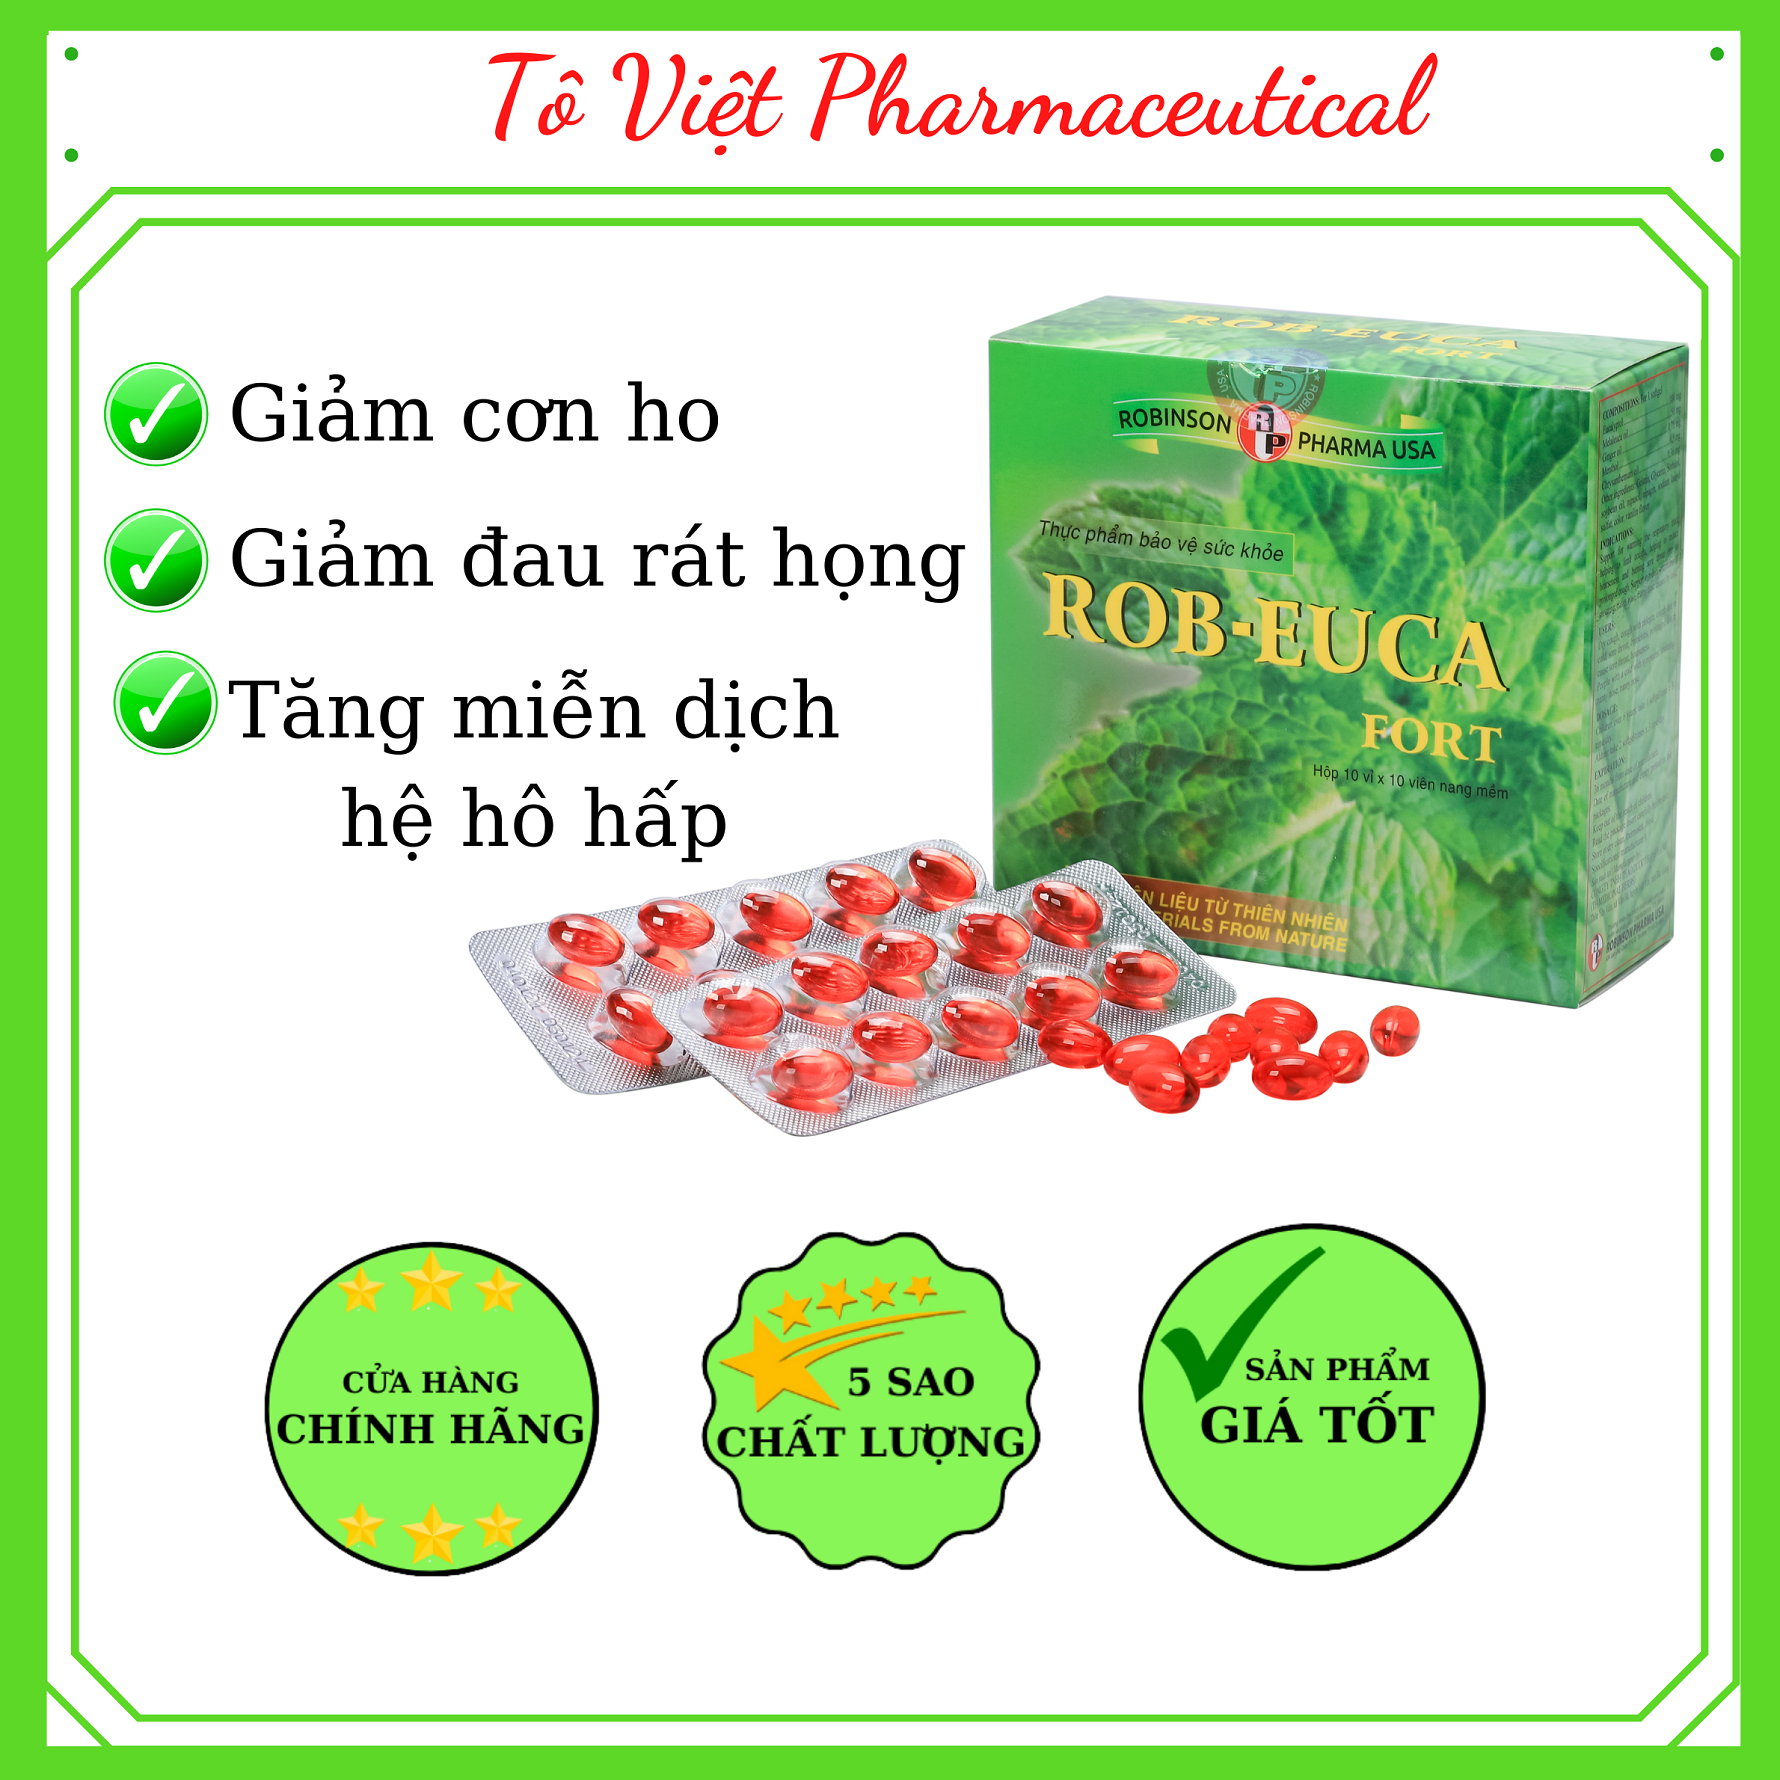 TPCN- Robinson pharma USA- Robeuca fort-Viên uống bổ phế giảm ho, đau, ngứa rát, giữ ẩm đường hô hấp (100 viên)